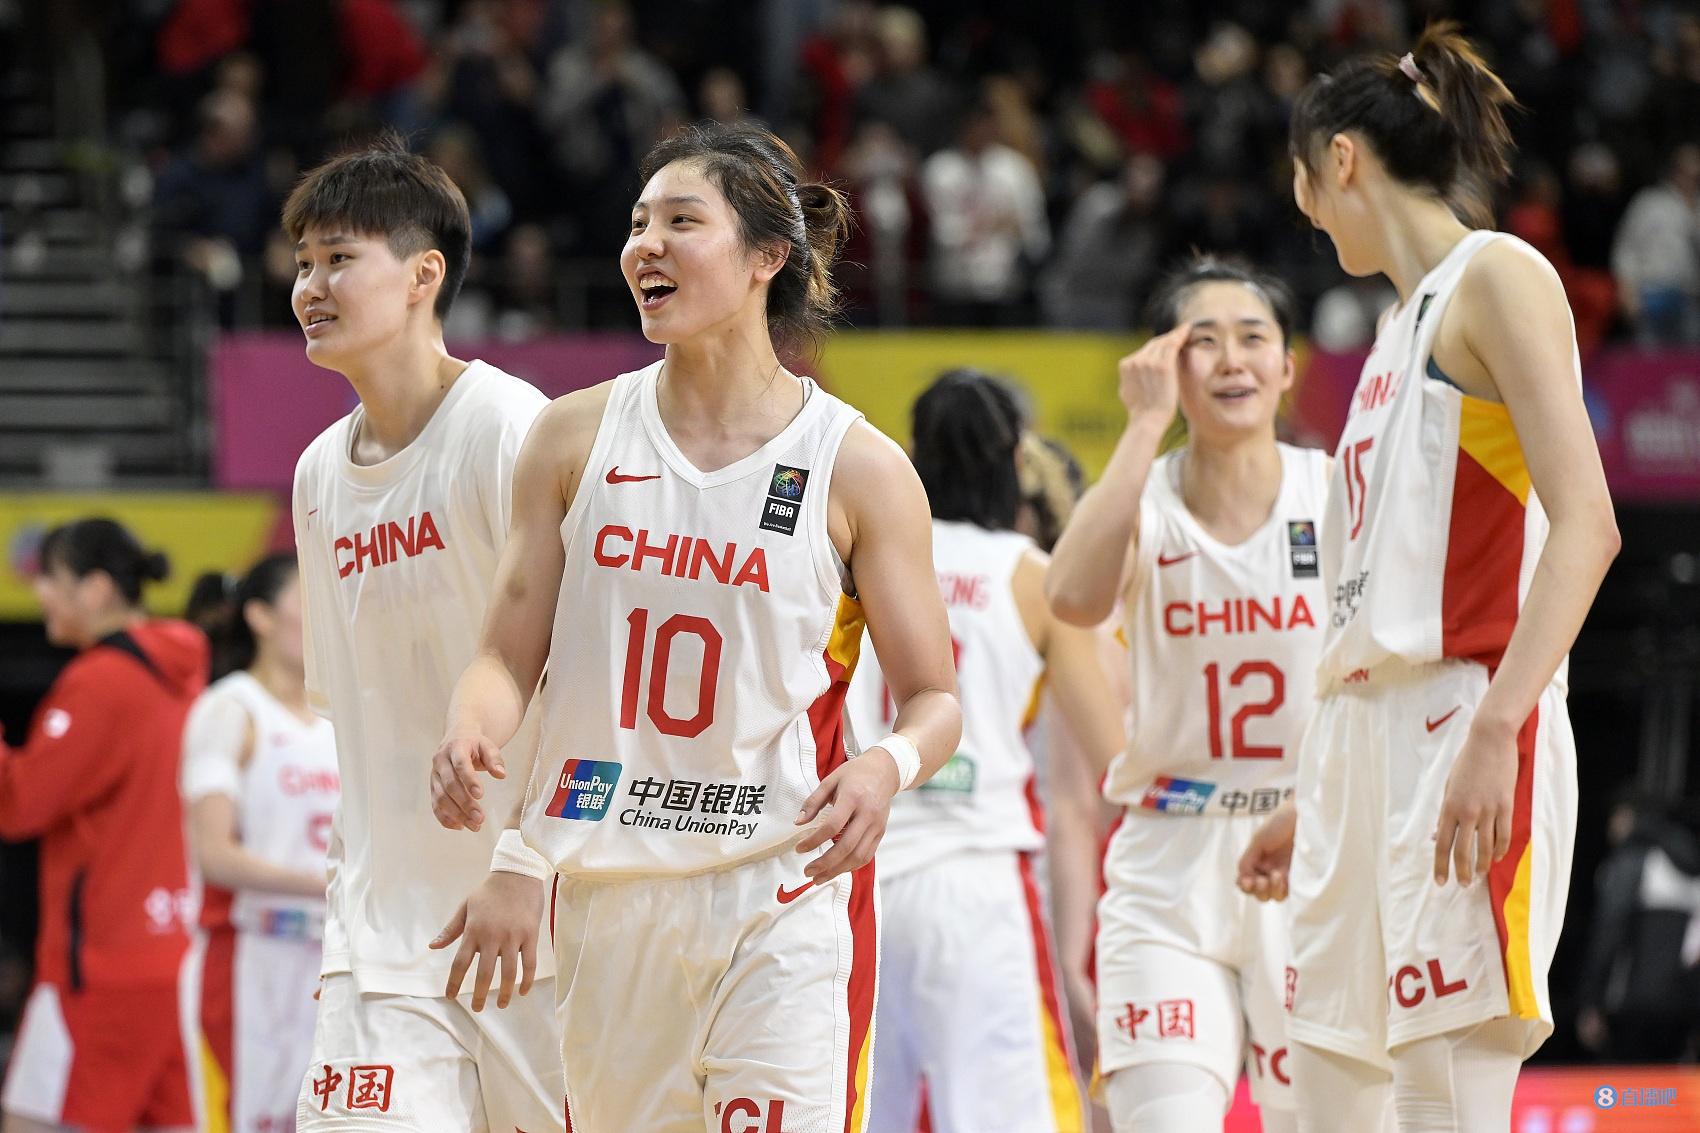 中国女篮亚运会主要对手为日韩 前者全主力出战&世界排名第9(1)